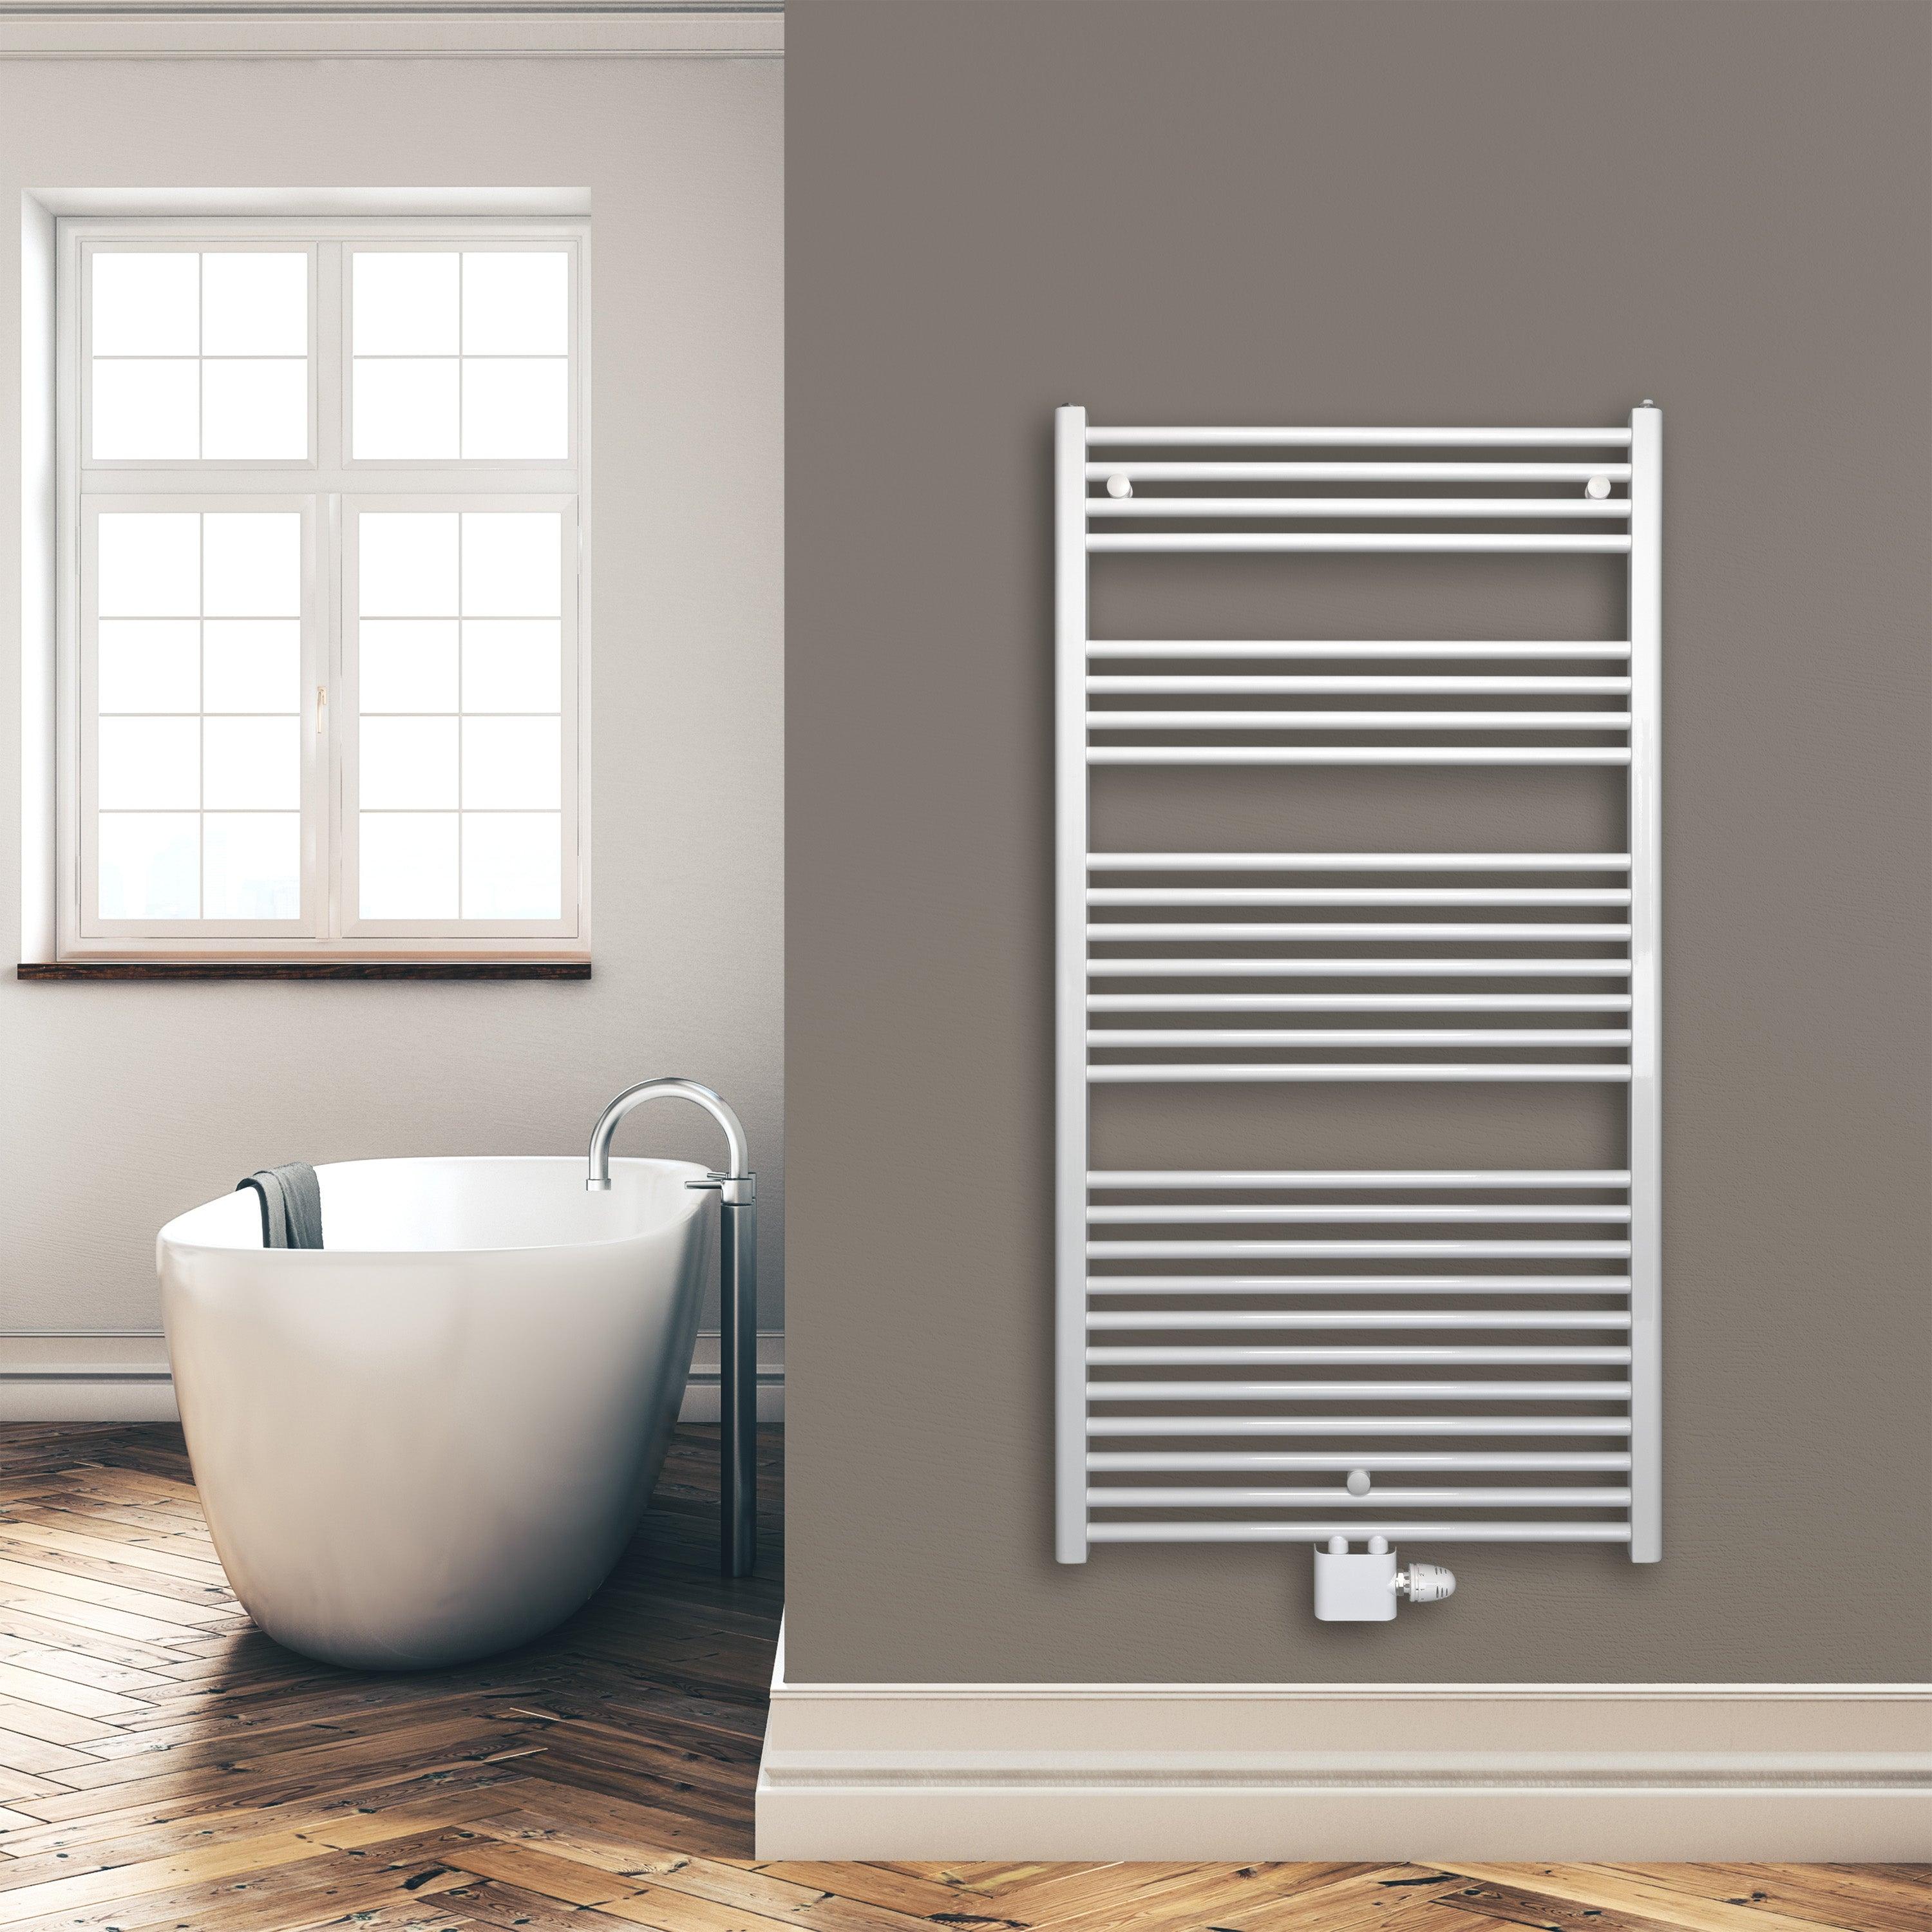 Badheizkörper 1424 x 750 mm gerade mit Mittenanschluss Handtuchhalter Badezimmer Heizung Handtuchwärmer weiß Montagebeispiel - heizkoerper.shop